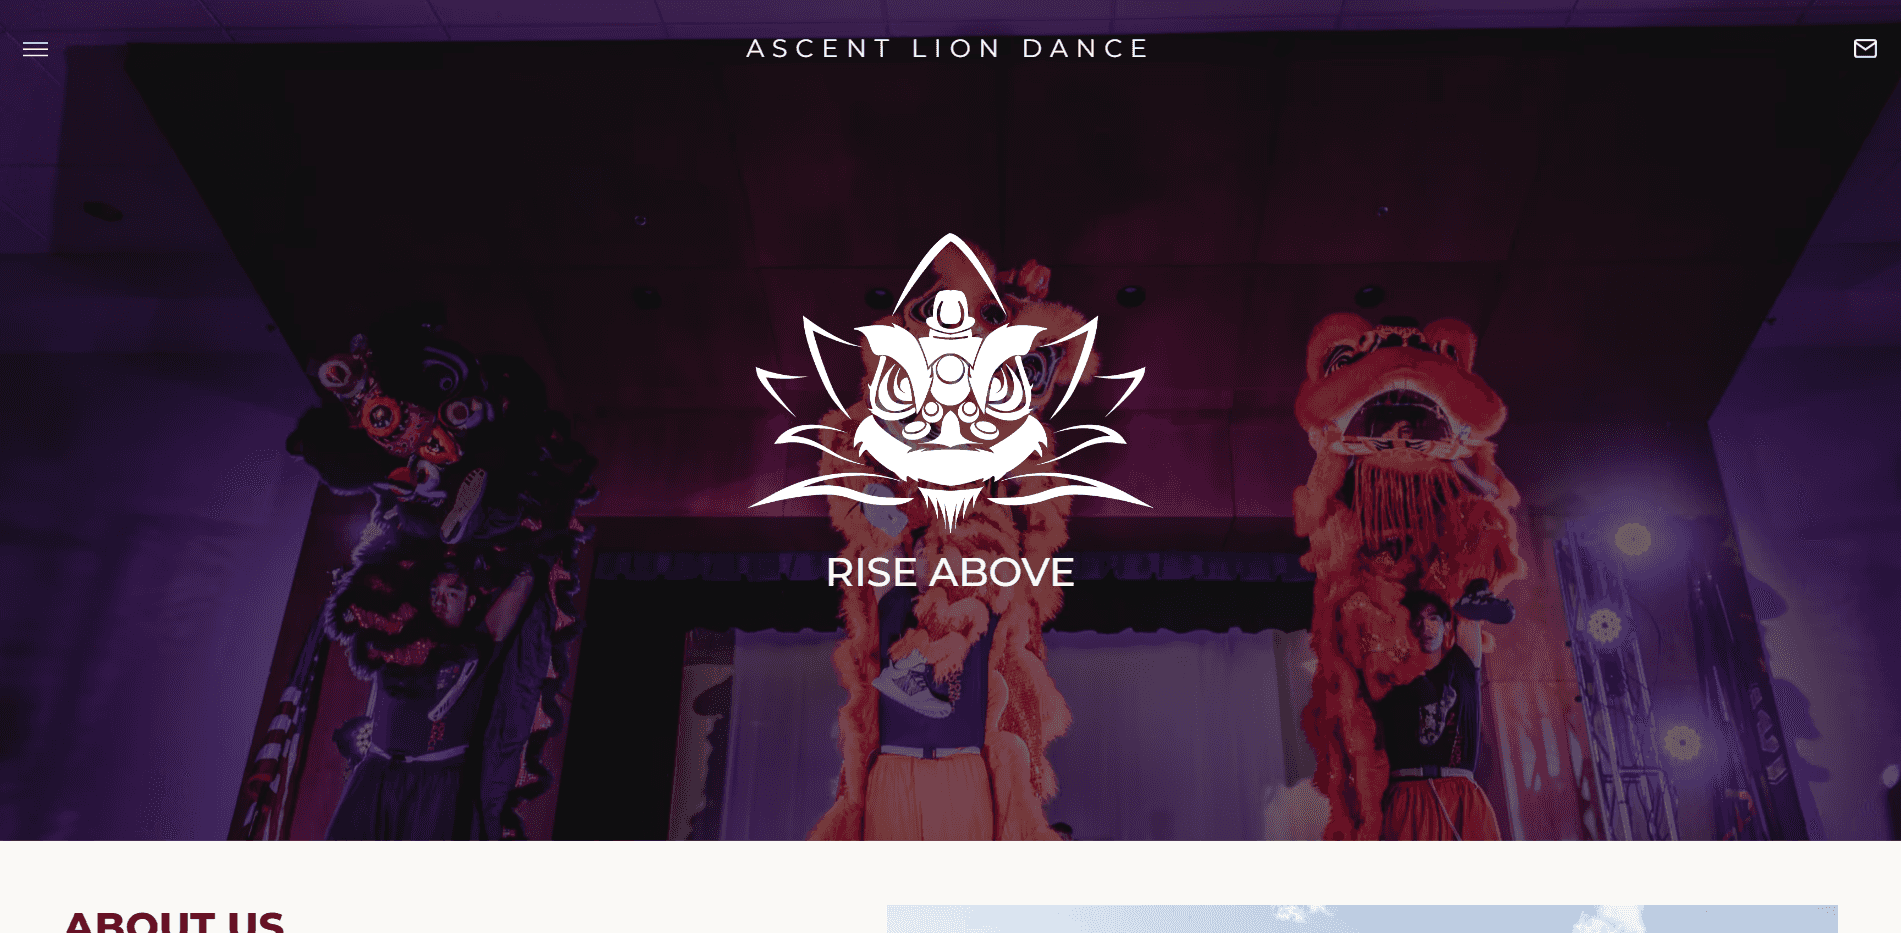 Ascent Lion Dance Website